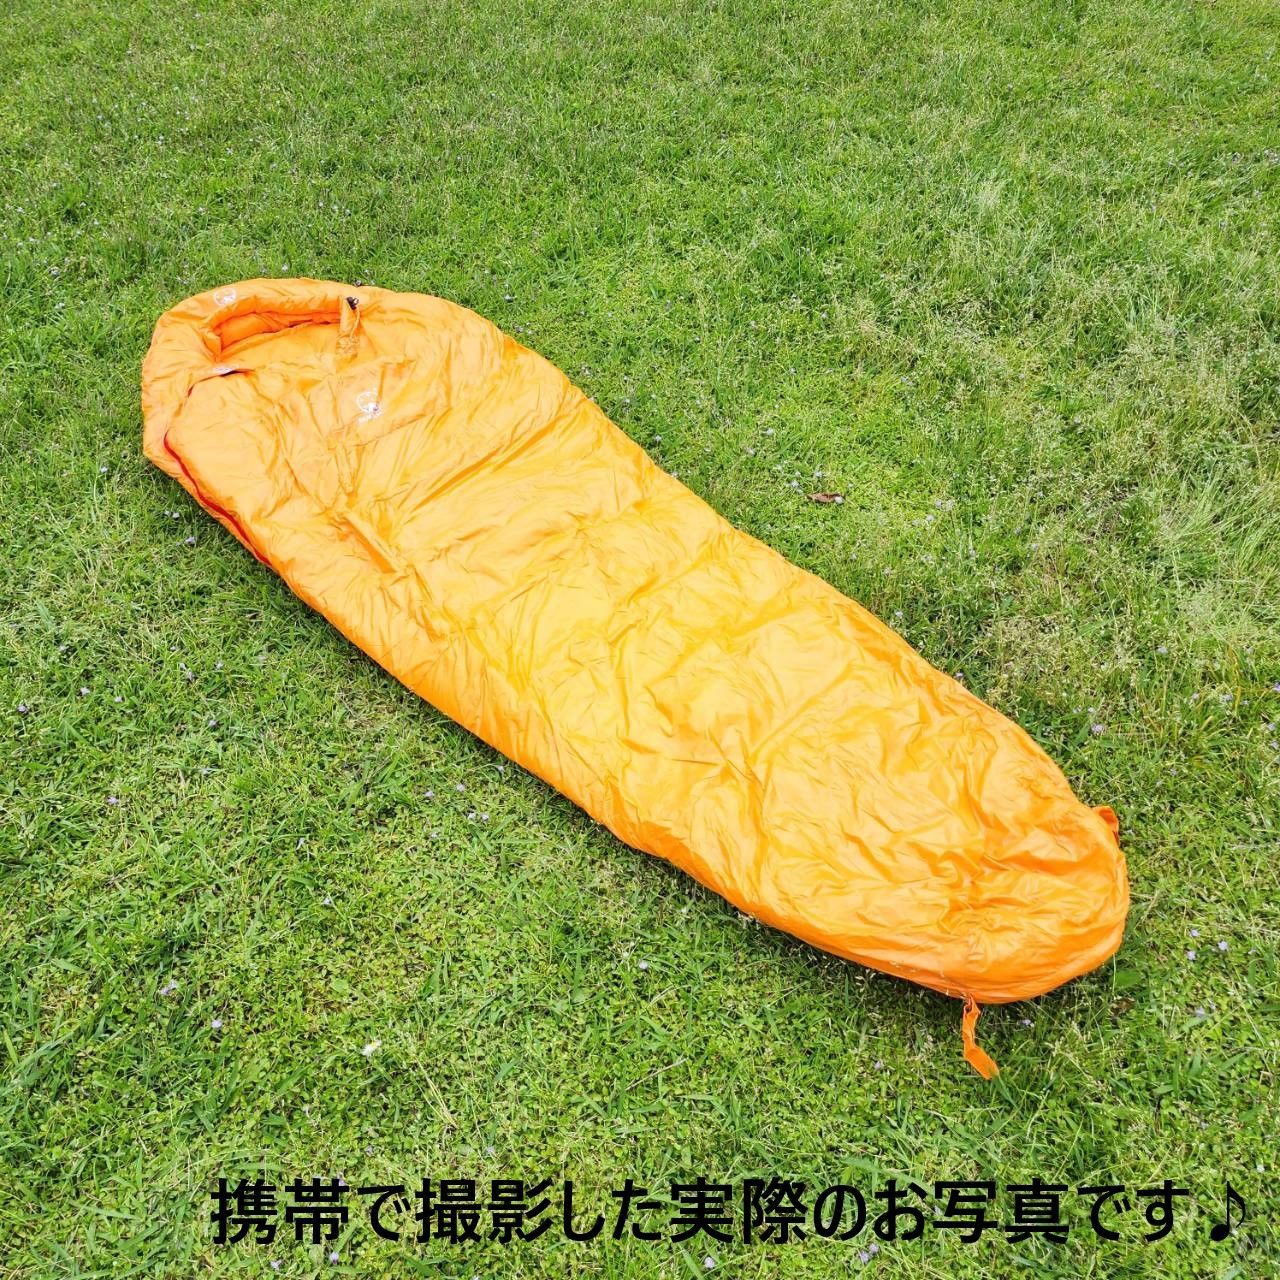 アウトドア 防水 グース ダウン マミー型 寝袋 シュラフ オレンジ 700g